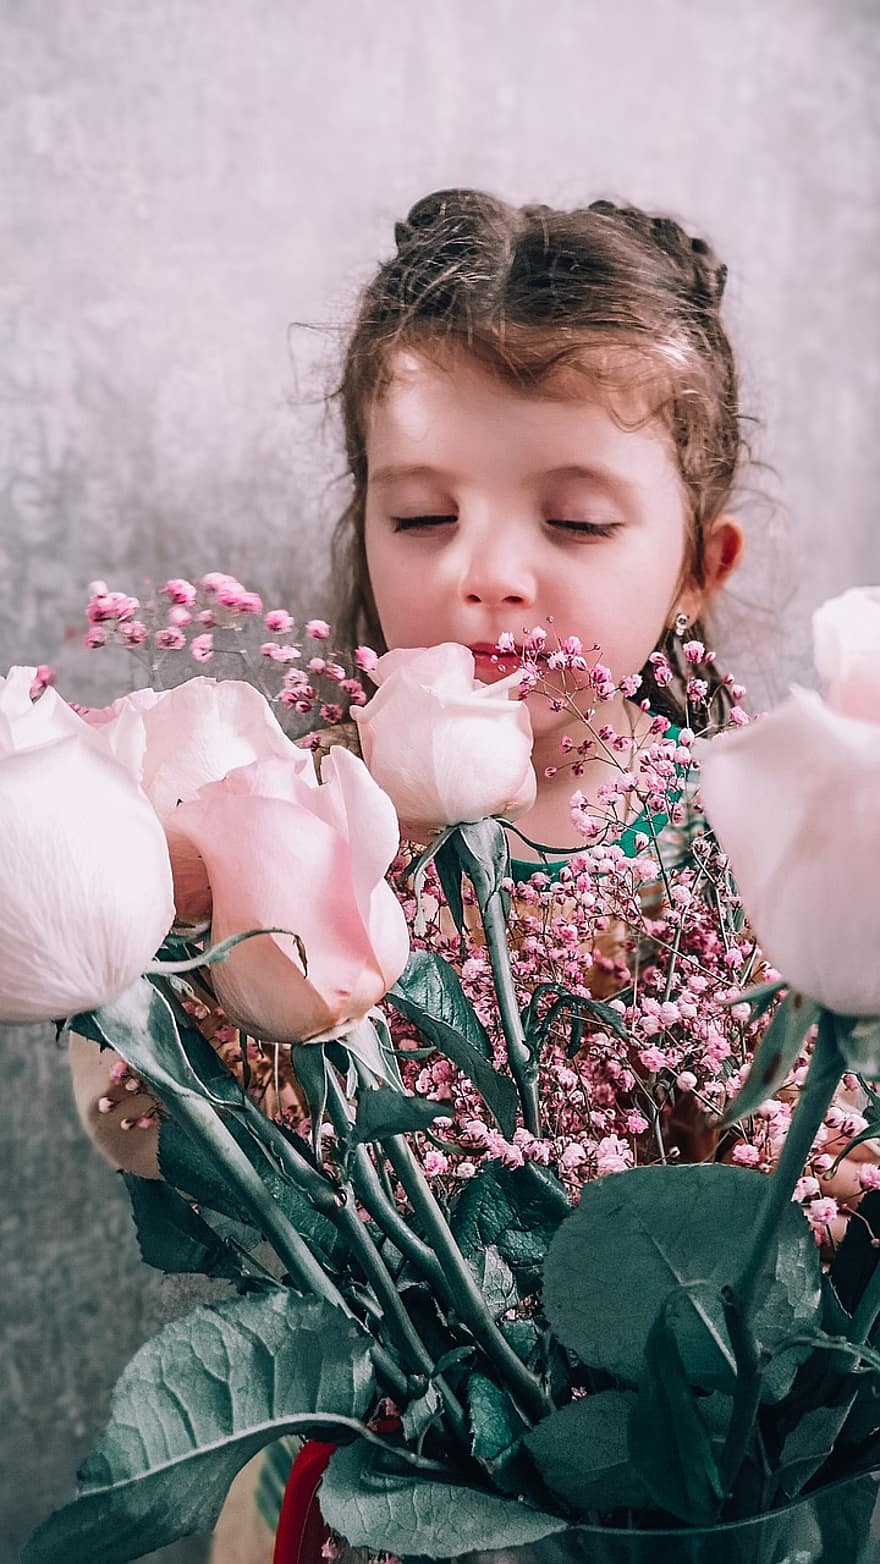 gadis, potret, bunga-bunga, buket, mawar, merangkai bunga, karangan bunga, gadis kecil, anak